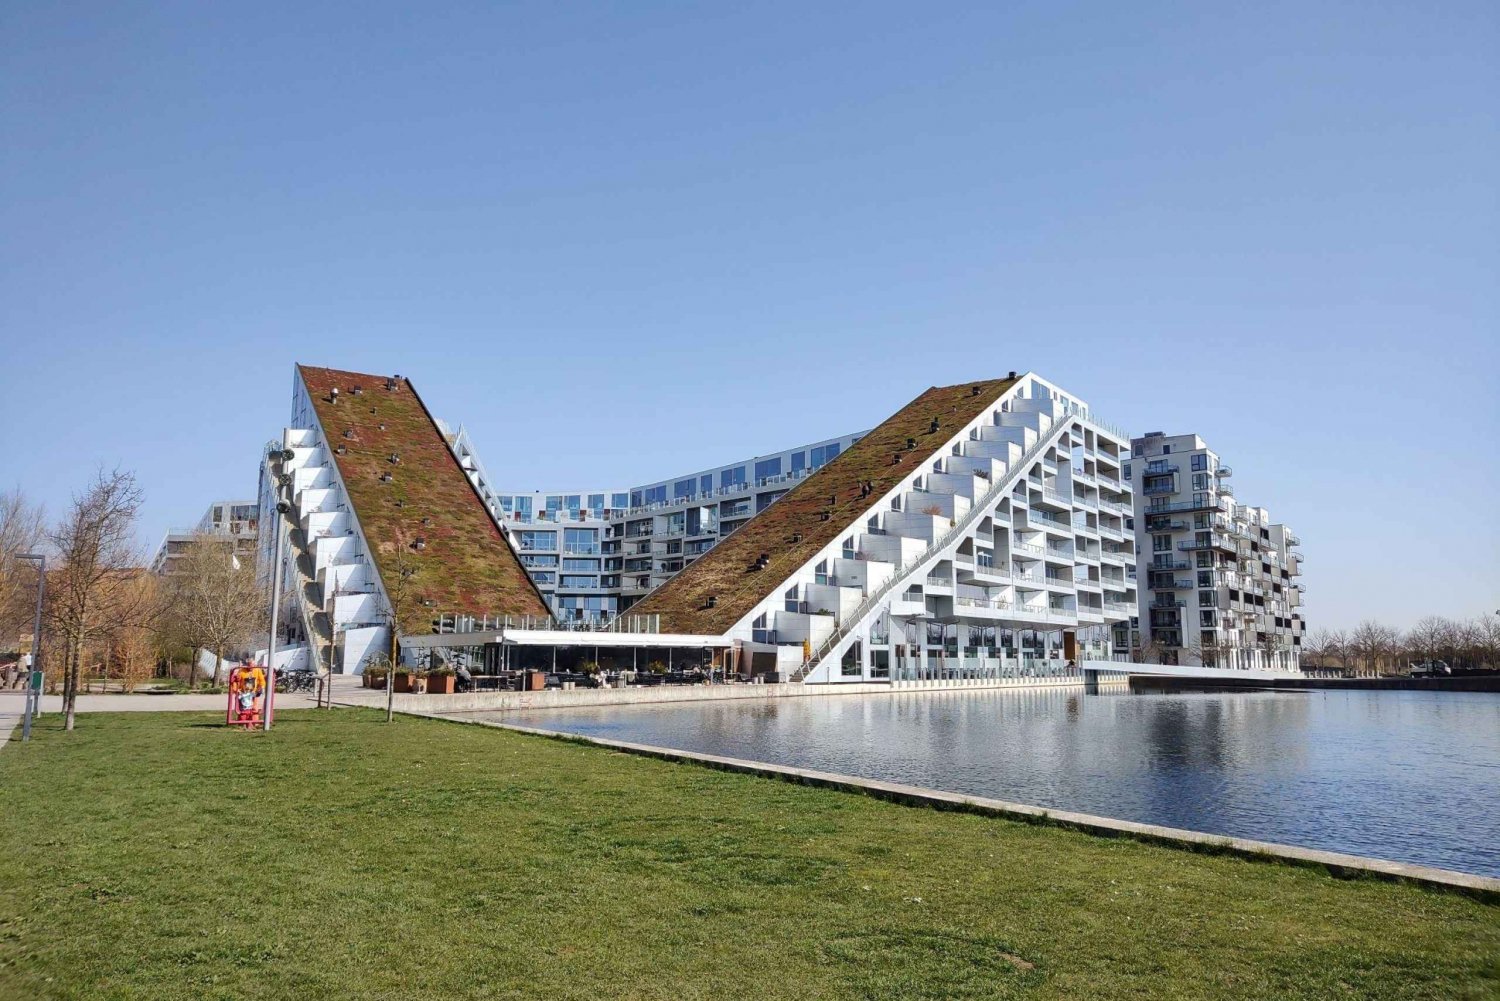 Kopenhagen: Ørestad und neue Architektur zu Fuß